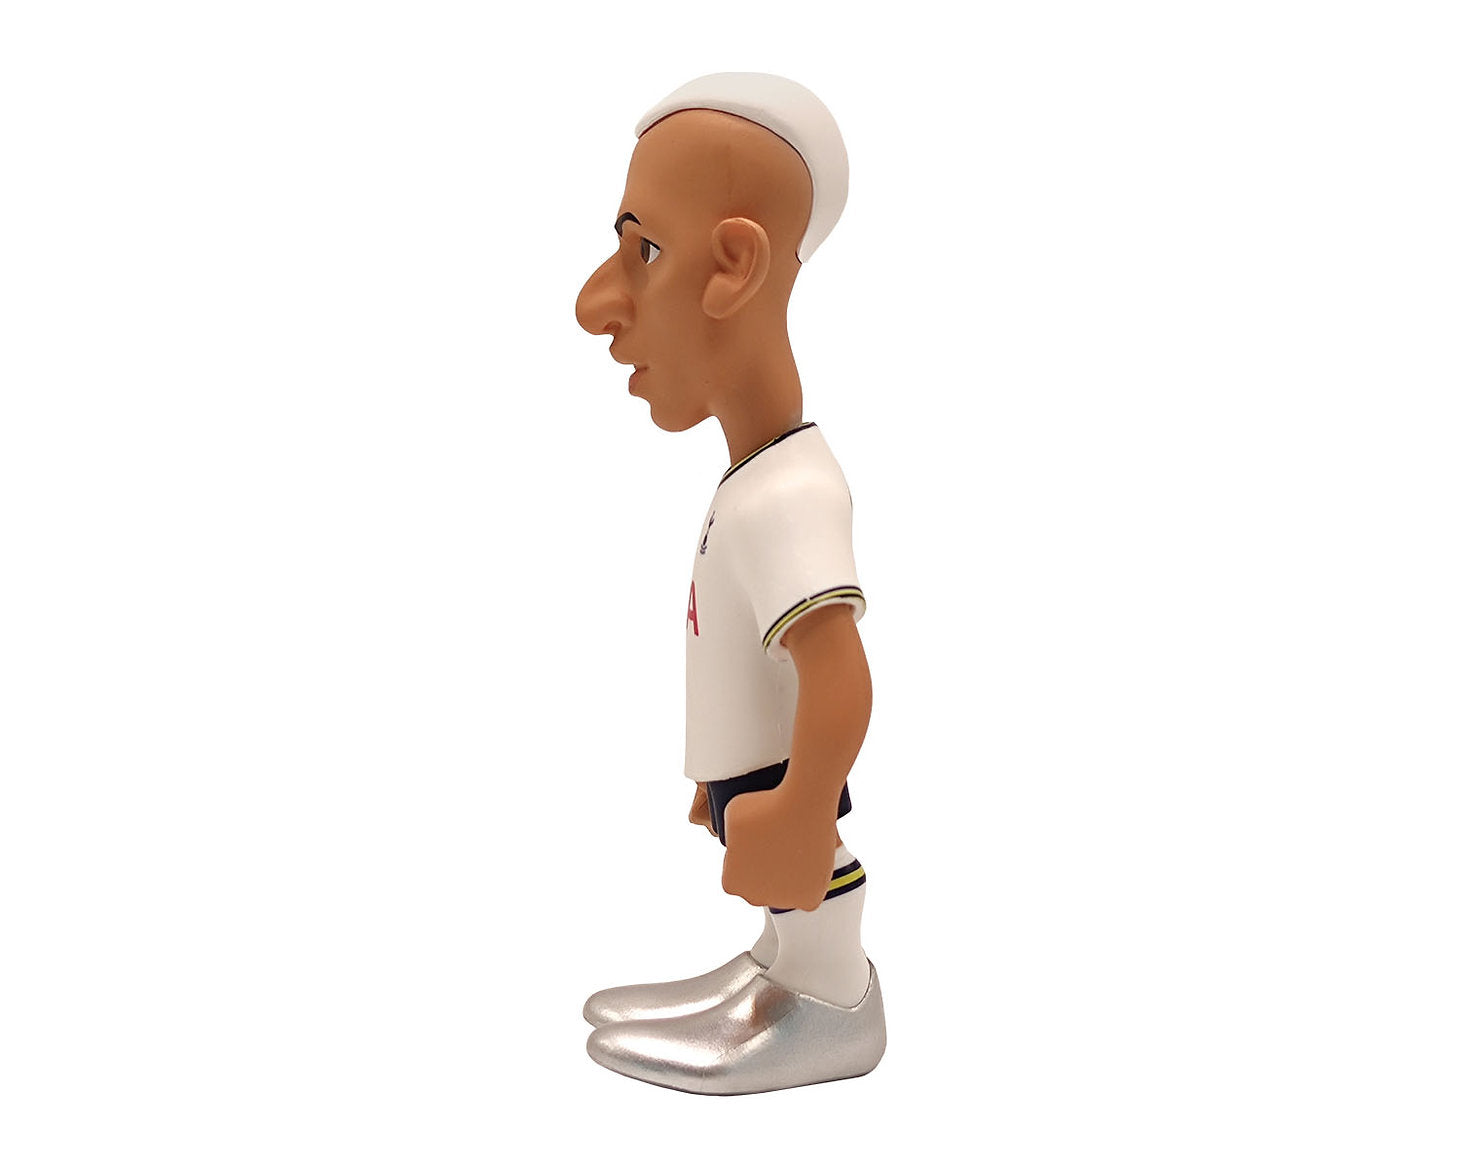 Minix - Football Stars #129 - Tottenham Hotspur Football Club - Richarlison "9" - Figurine 12cm